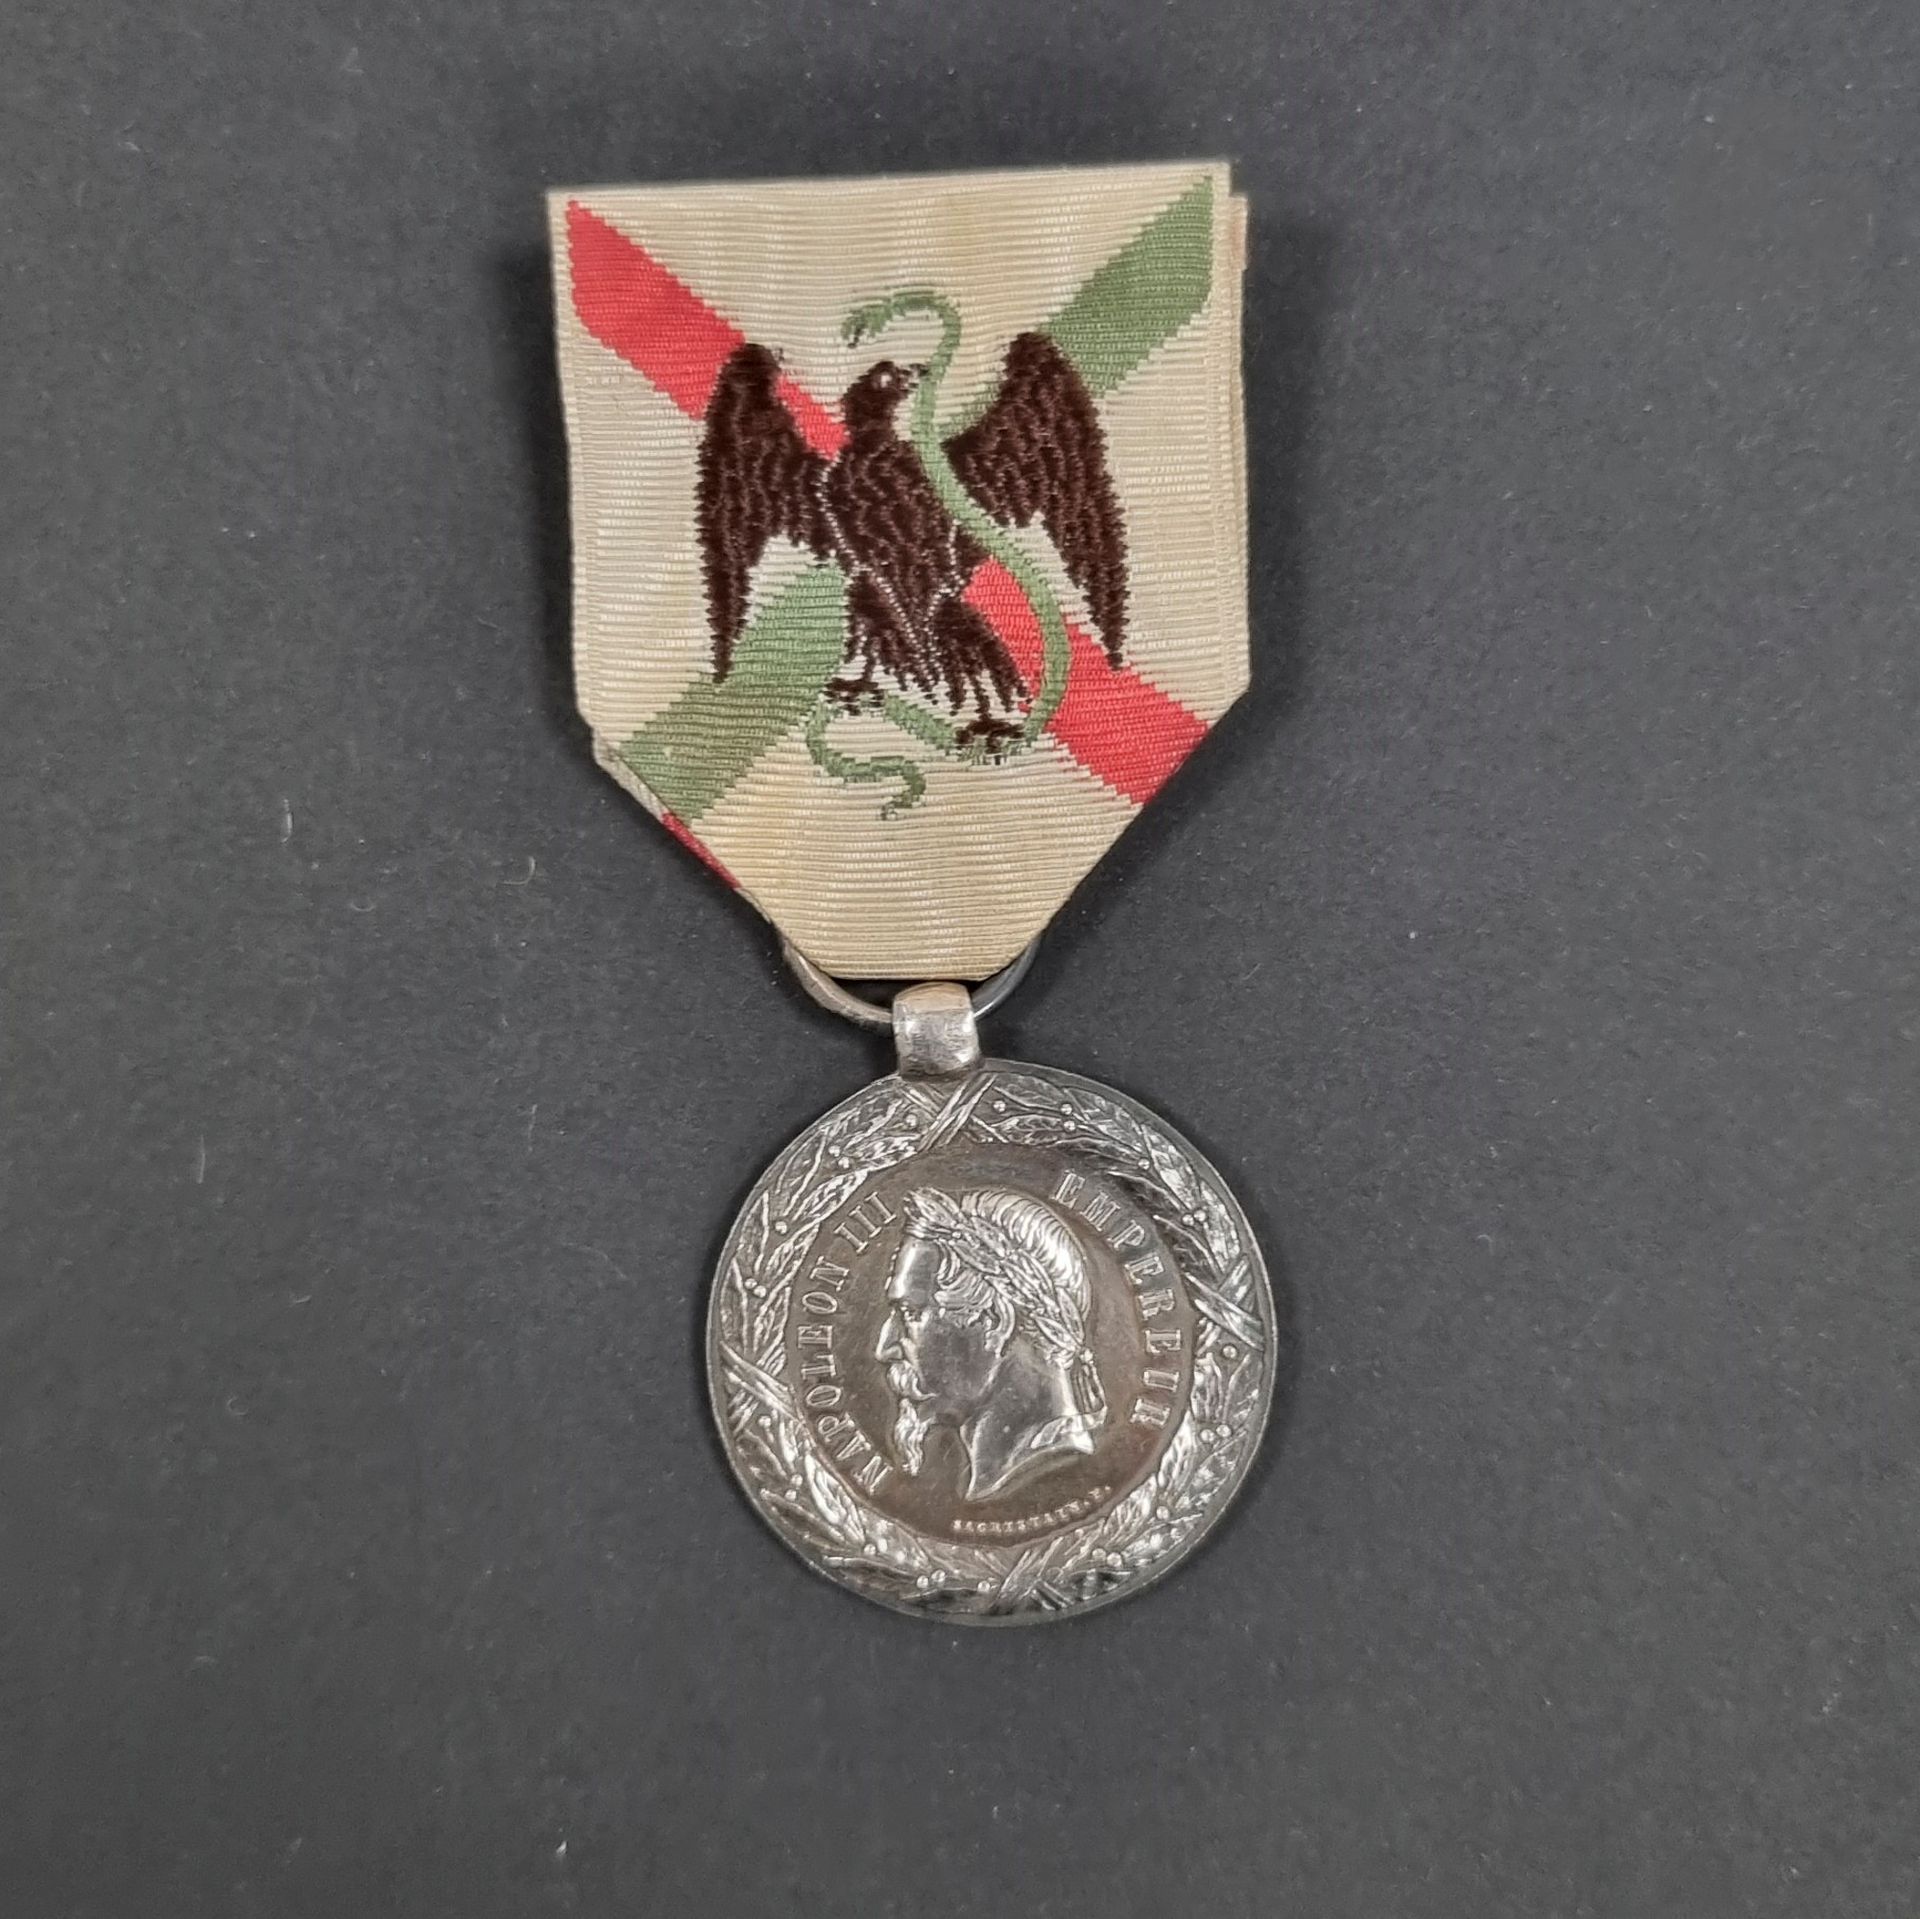 Null 法国 
墨西哥战役奖章，由萨克里斯泰恩制作。
银制。绶带。 
野猪头印记。
30毫米 - 净重：14.4克
T.T.B.